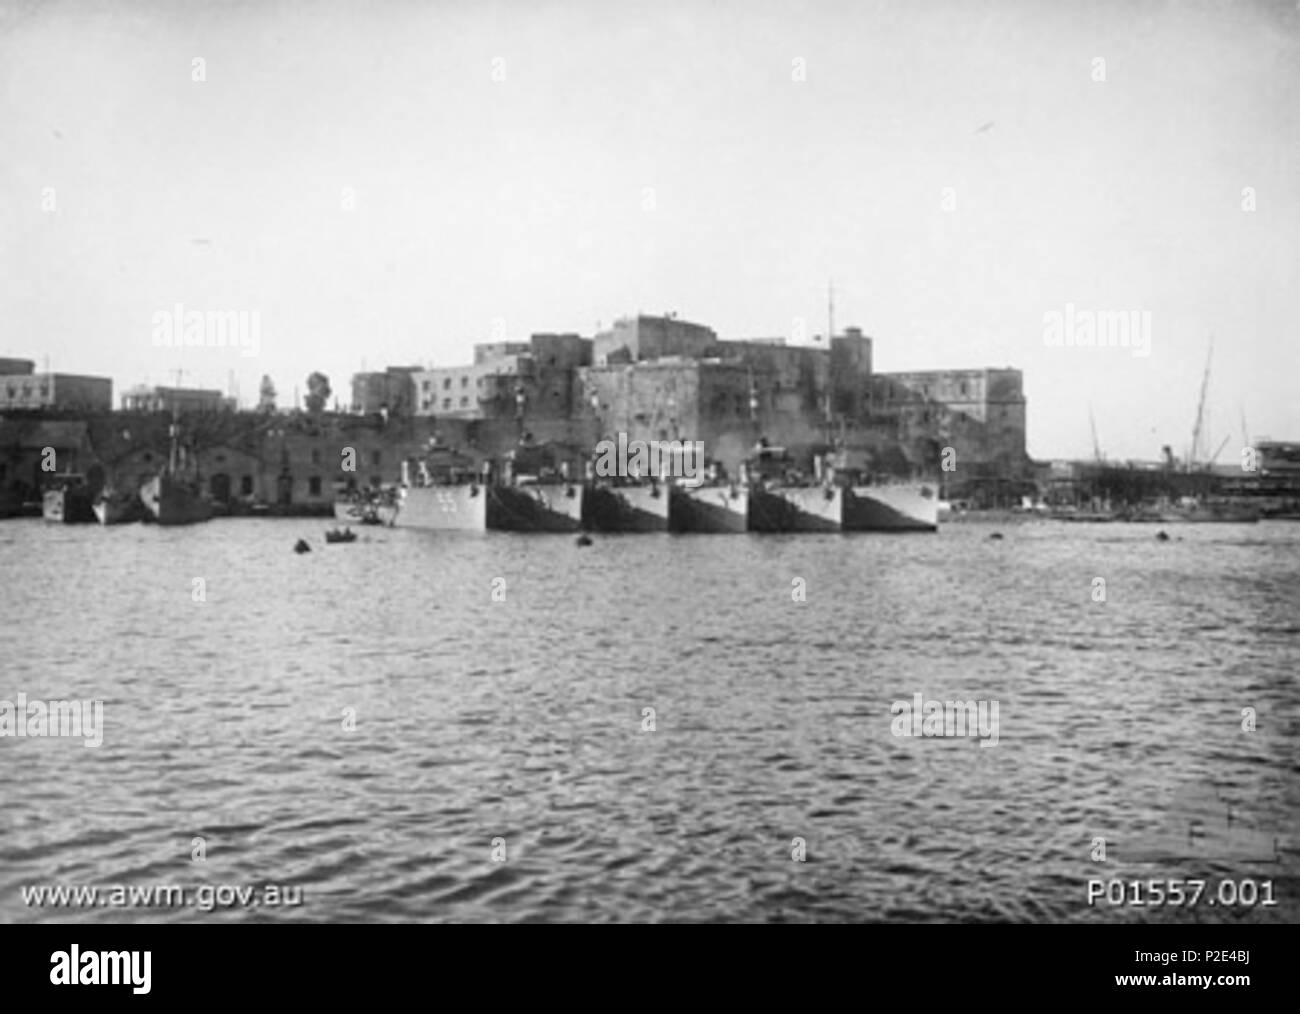 . AWM Bildunterschrift: Brindisi, Italien. 1917. Lief "Fluss" KLASSE ZERSTÖRERFLOTTILLE VOR ANKER IM HAFEN, UNTER DEFISA SCHLOSS. Von links nach rechts: HMAS PARRAMATTA (55), Yarra (79), HUON (50), SWAN (61), WARREGO (70) UND DER BRITISCHEN ROYAL NAVY DESTROYER. HMAS TORRENS (nicht dargestellt) WAR AUCH MIT DEN ANDEREN FÜNF ZERSTÖRER IN BRINDISI von 1917-08. (DONOR E.GNADE). 1917. Fotograf nicht identifiziert 49 Fluss Klasse (01557-001) AWM P Stockfoto